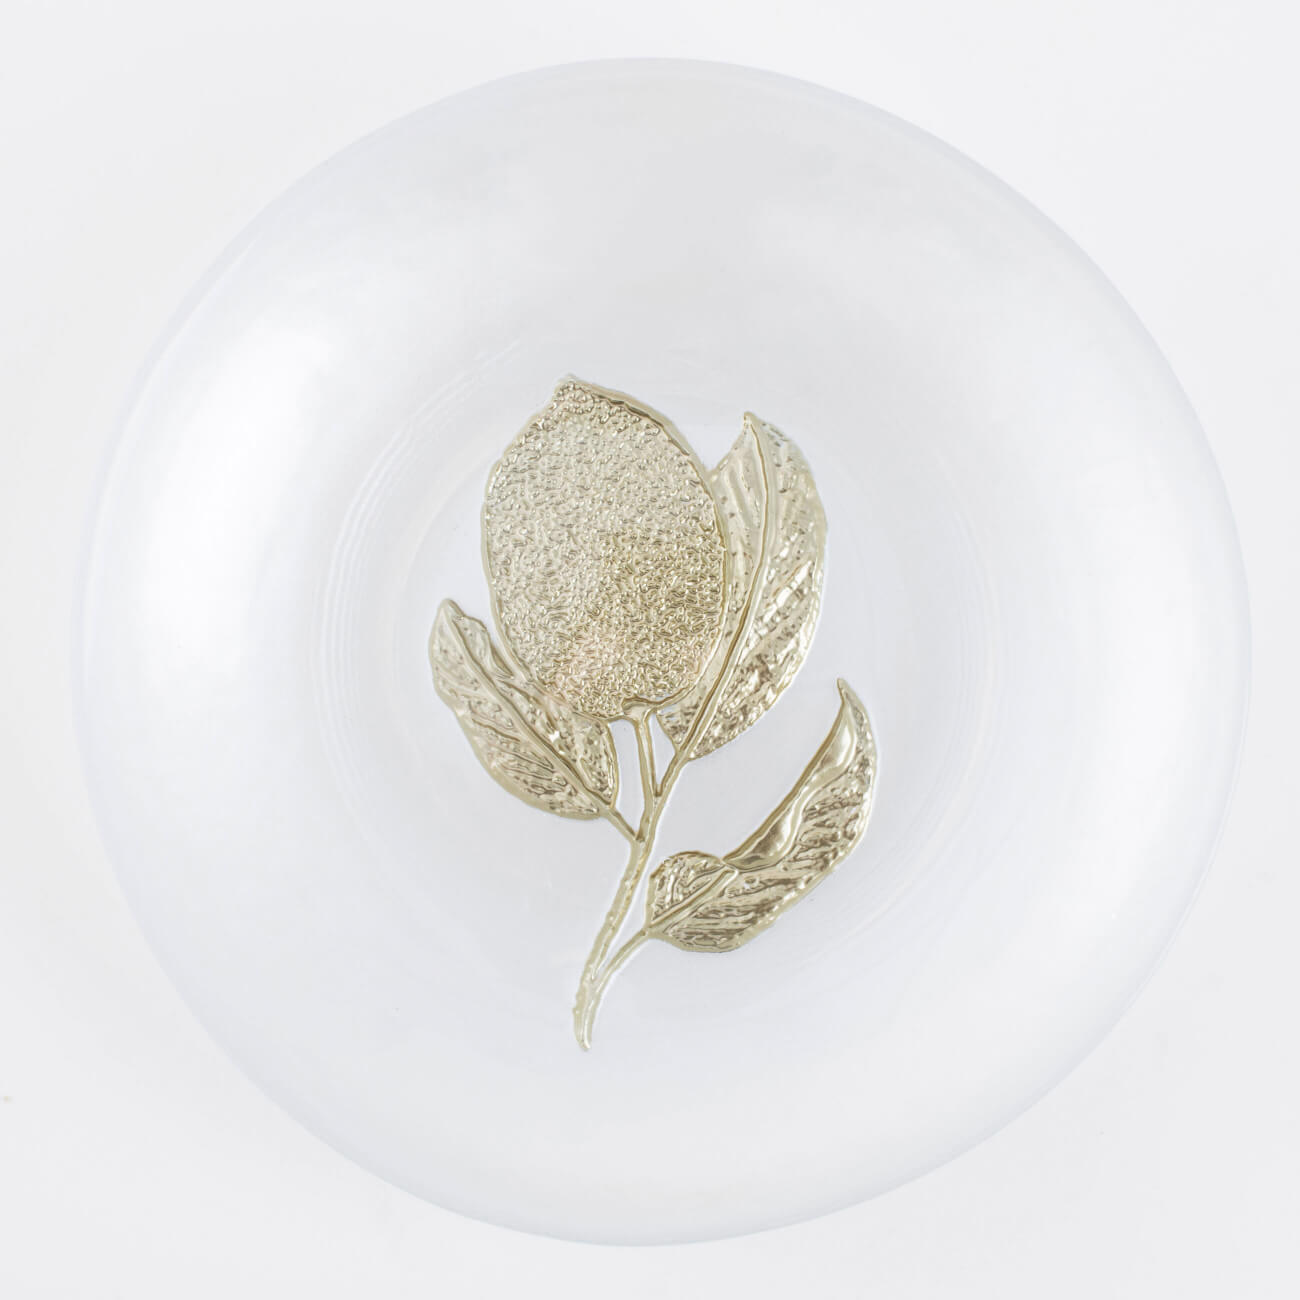 Тарелка десертная, 15 см, стекло, молочно-золотистая, Лимон, Sicily in bloom изображение № 1